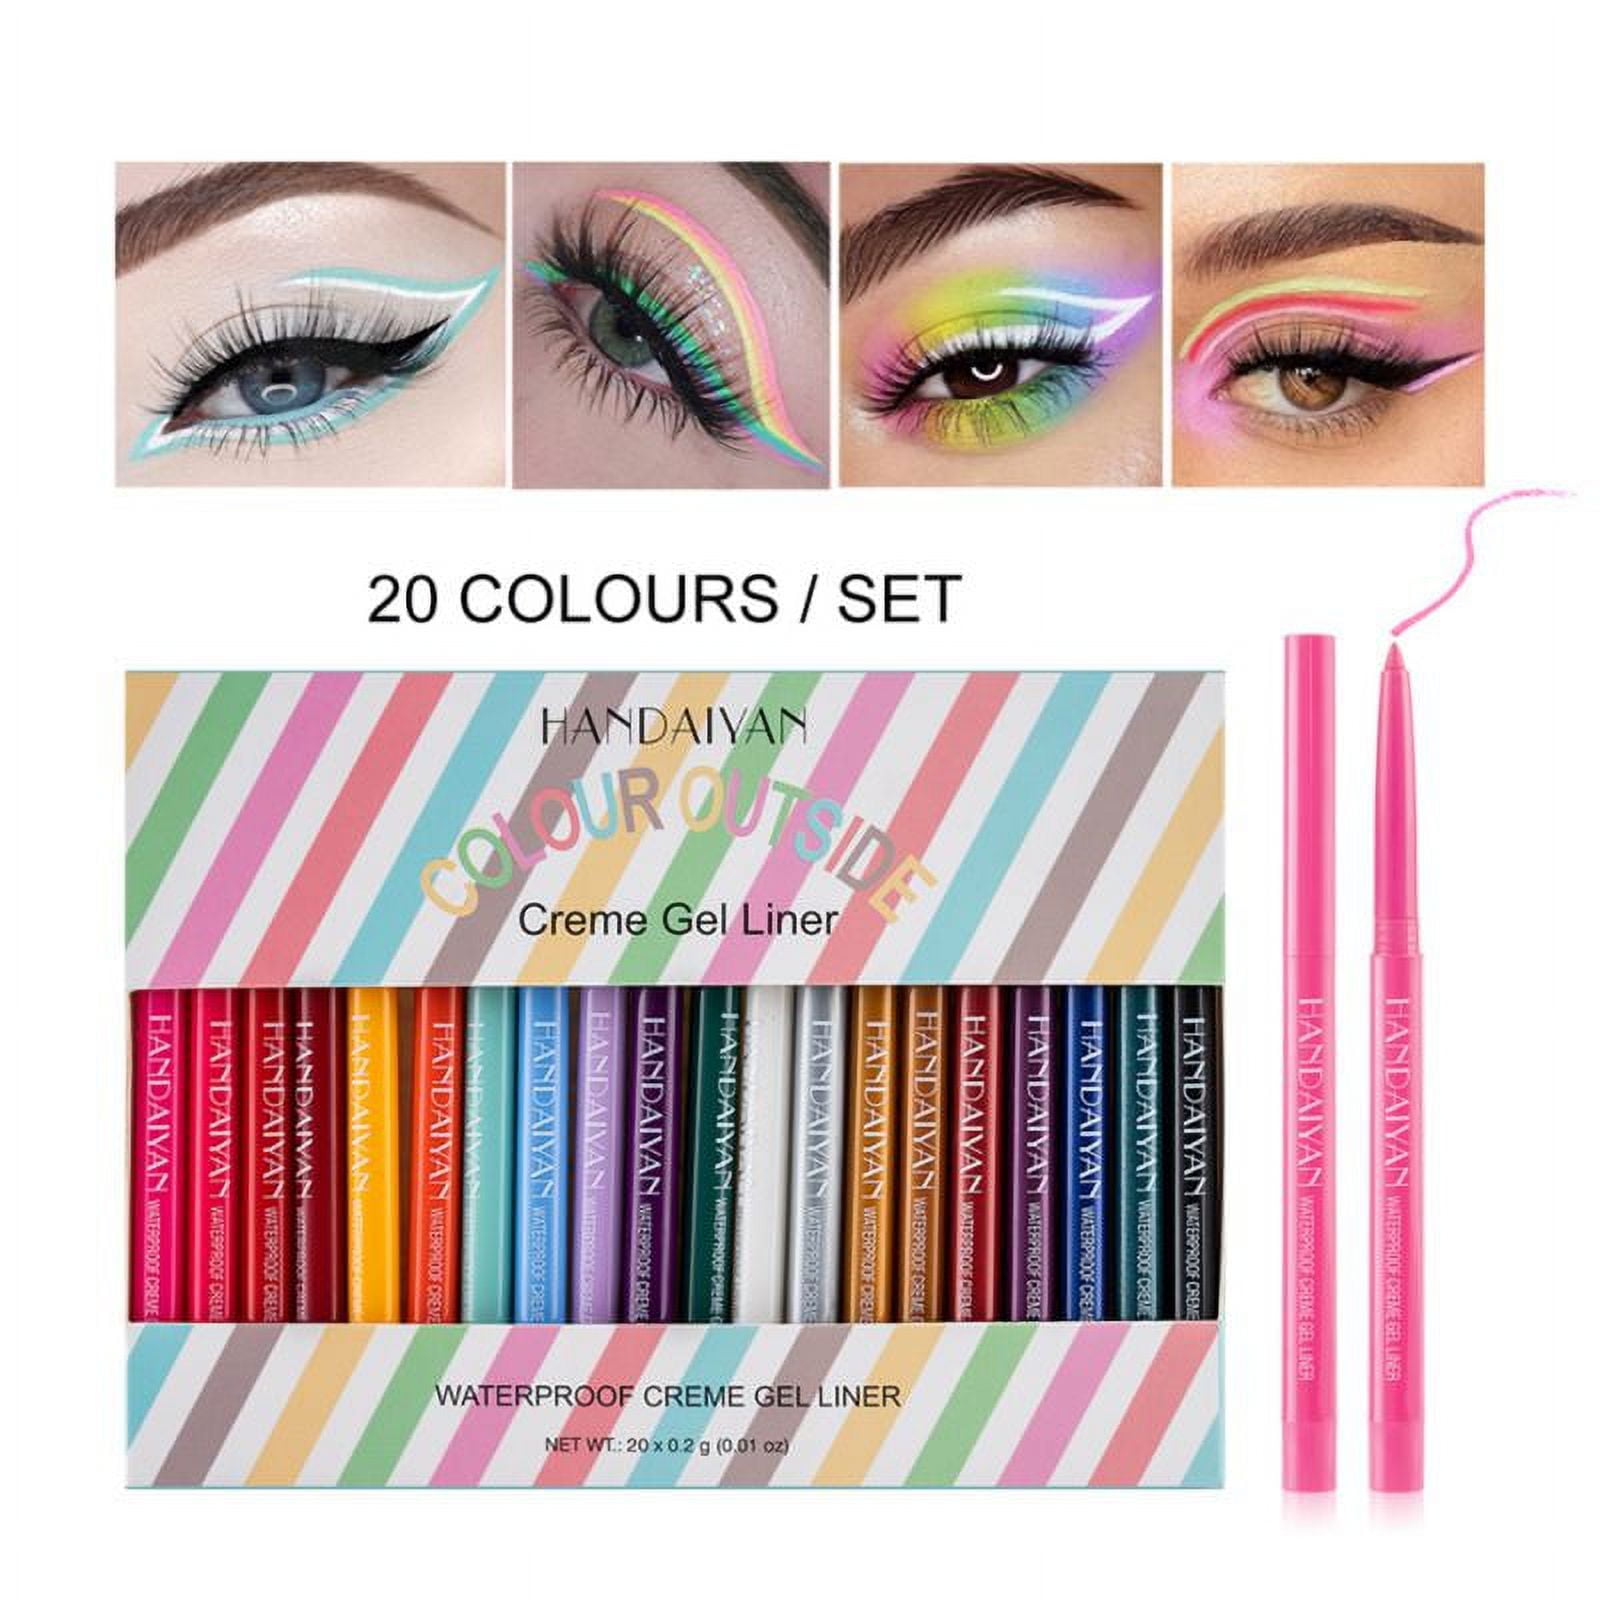 20 Colors Matte Gel Eyeliner Pencil Set, Natural Waterproof Long Lasting  Eyeliners Eye Makeup Pen, Easy Apply Colored Eyeliner Retractable Eye  Makeup Liners 